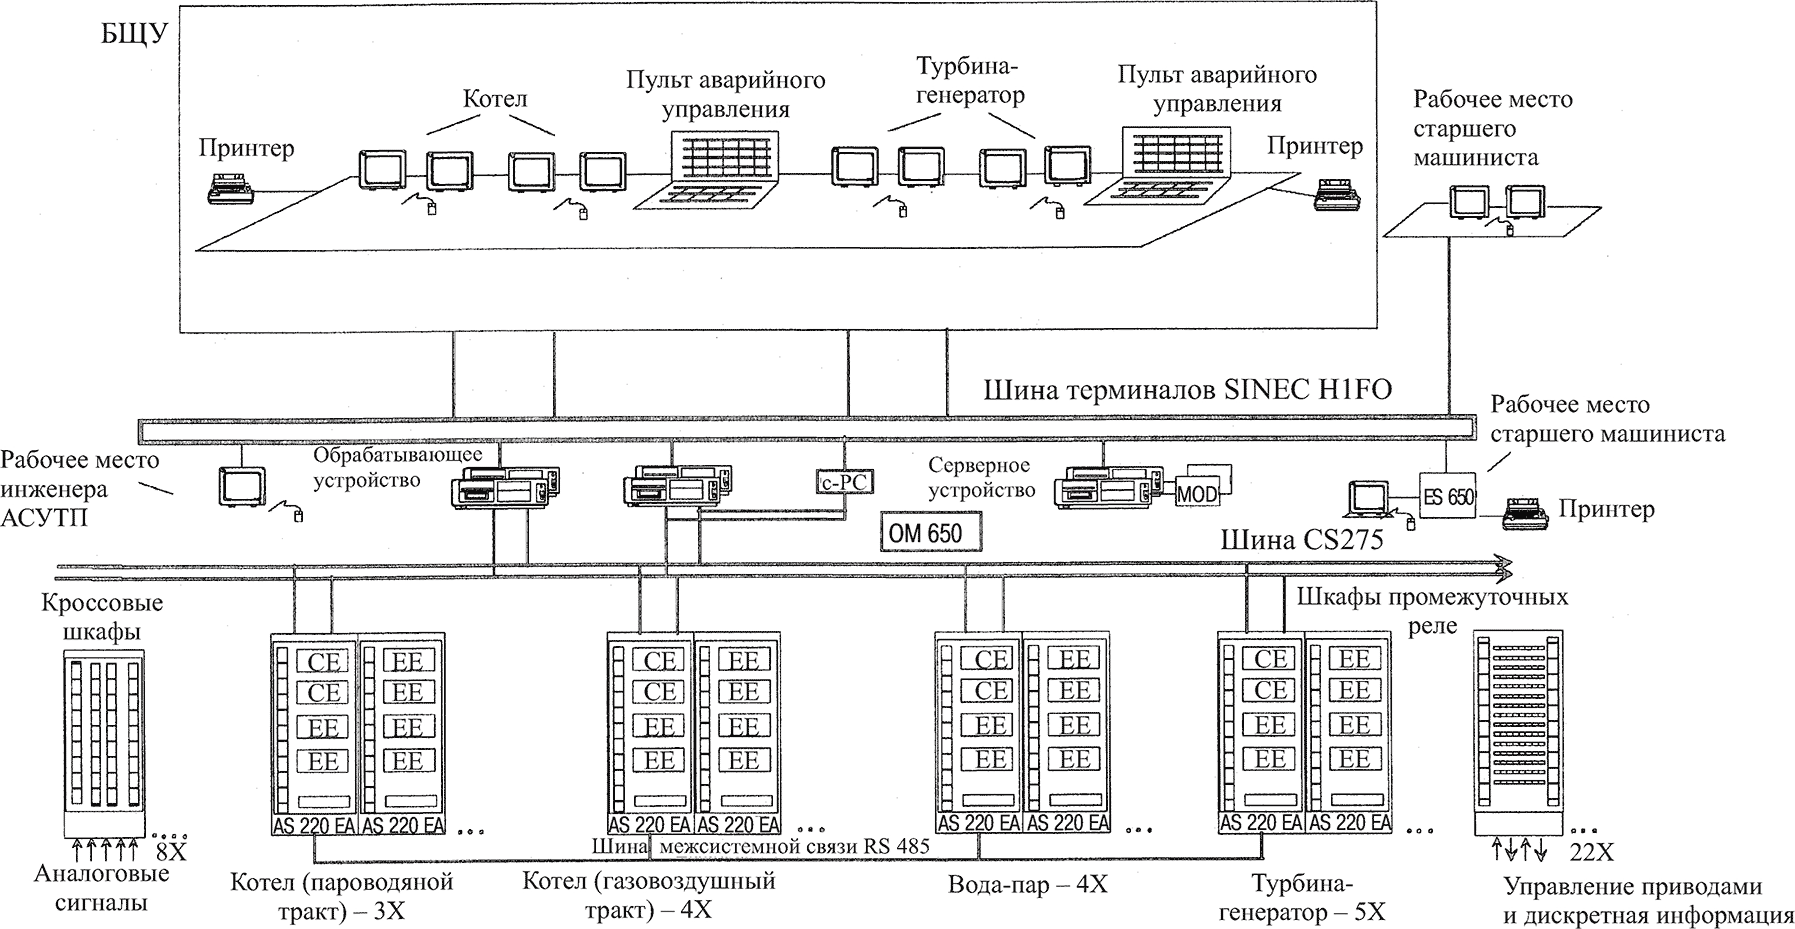 структурная схема АСУ ТП энергоблока